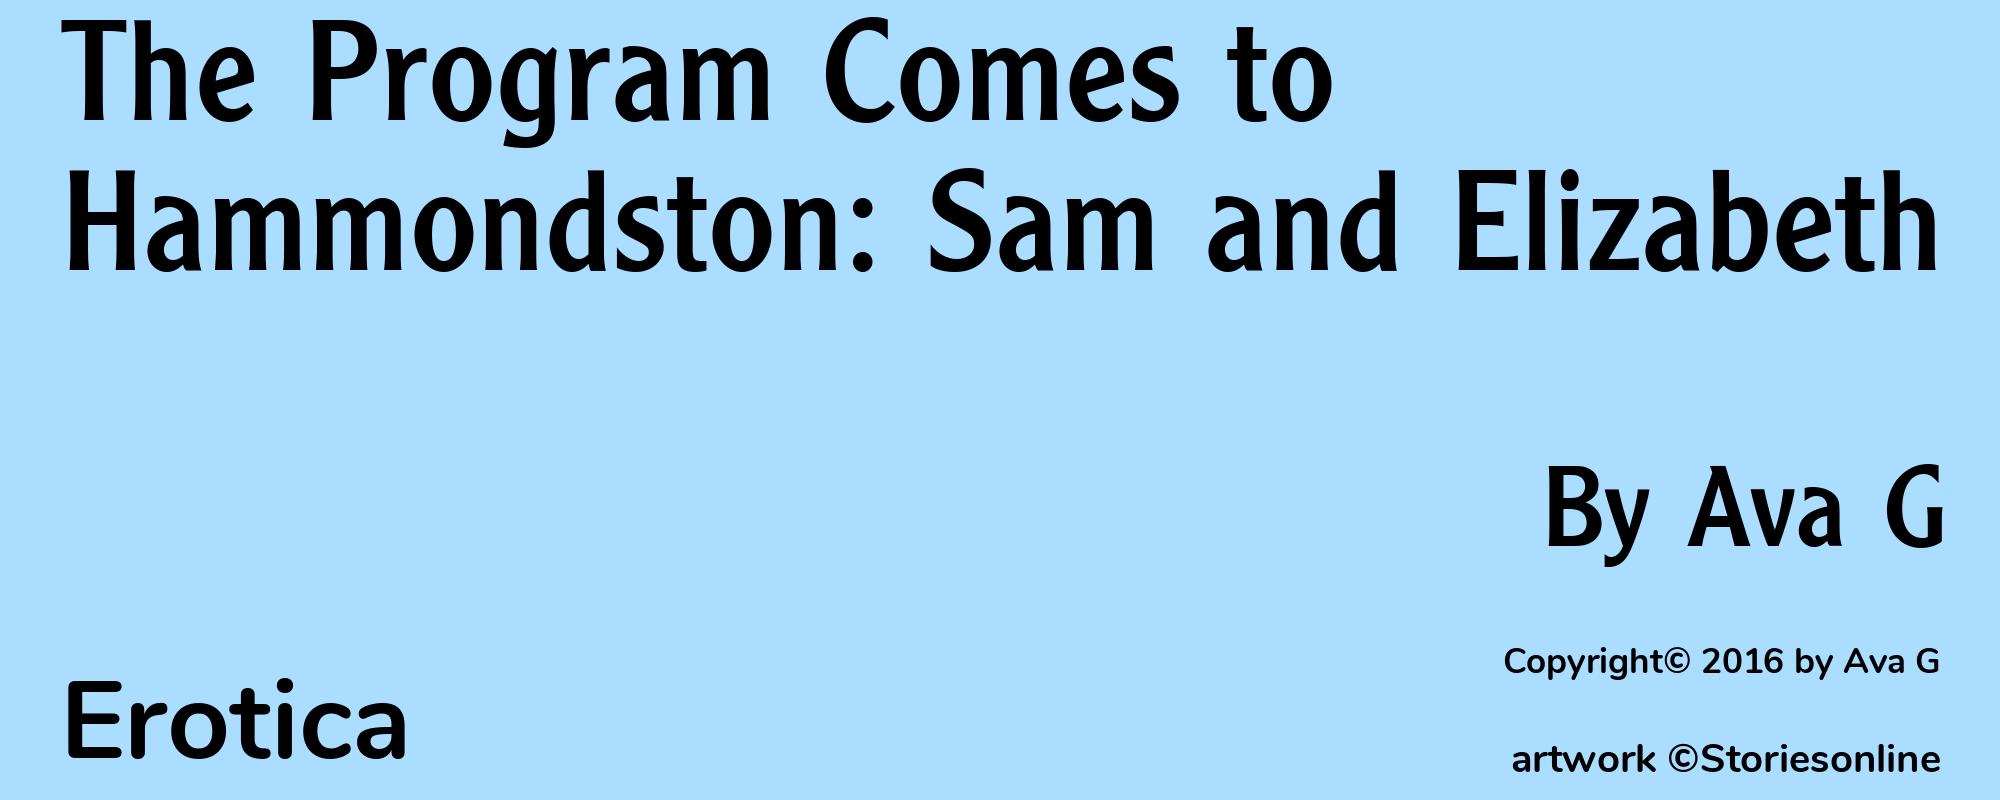 The Program Comes to Hammondston: Sam and Elizabeth - Cover